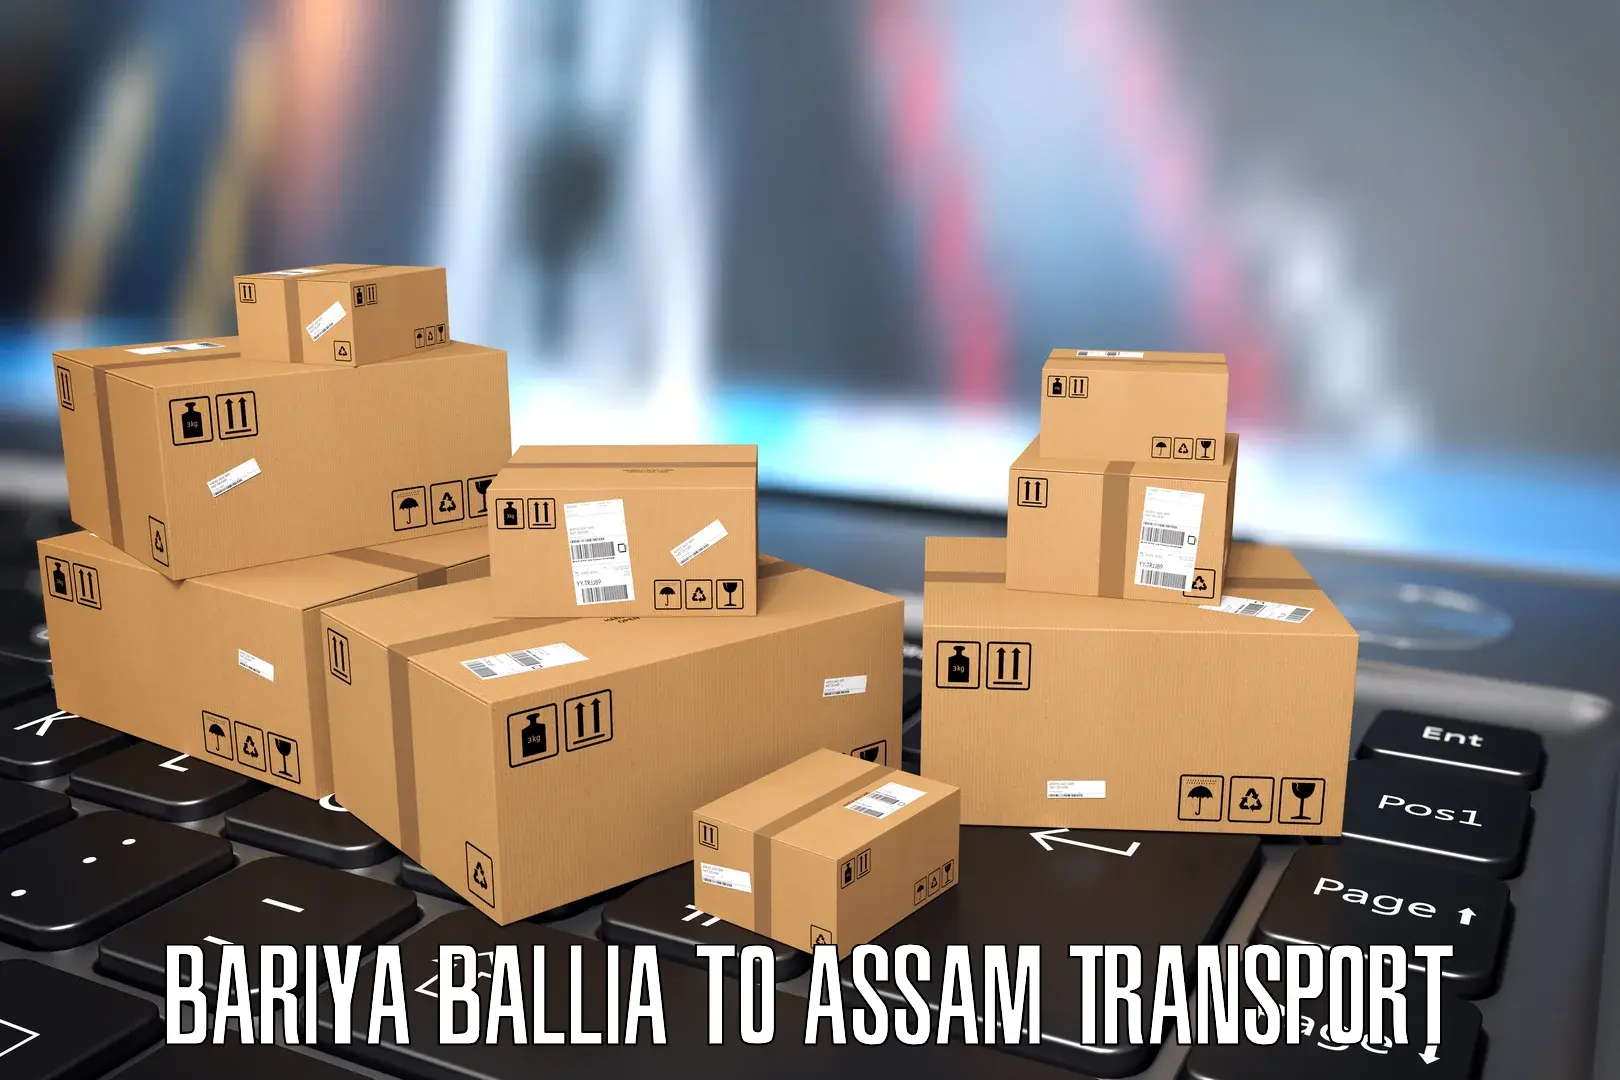 Pick up transport service Bariya Ballia to Hailakandi